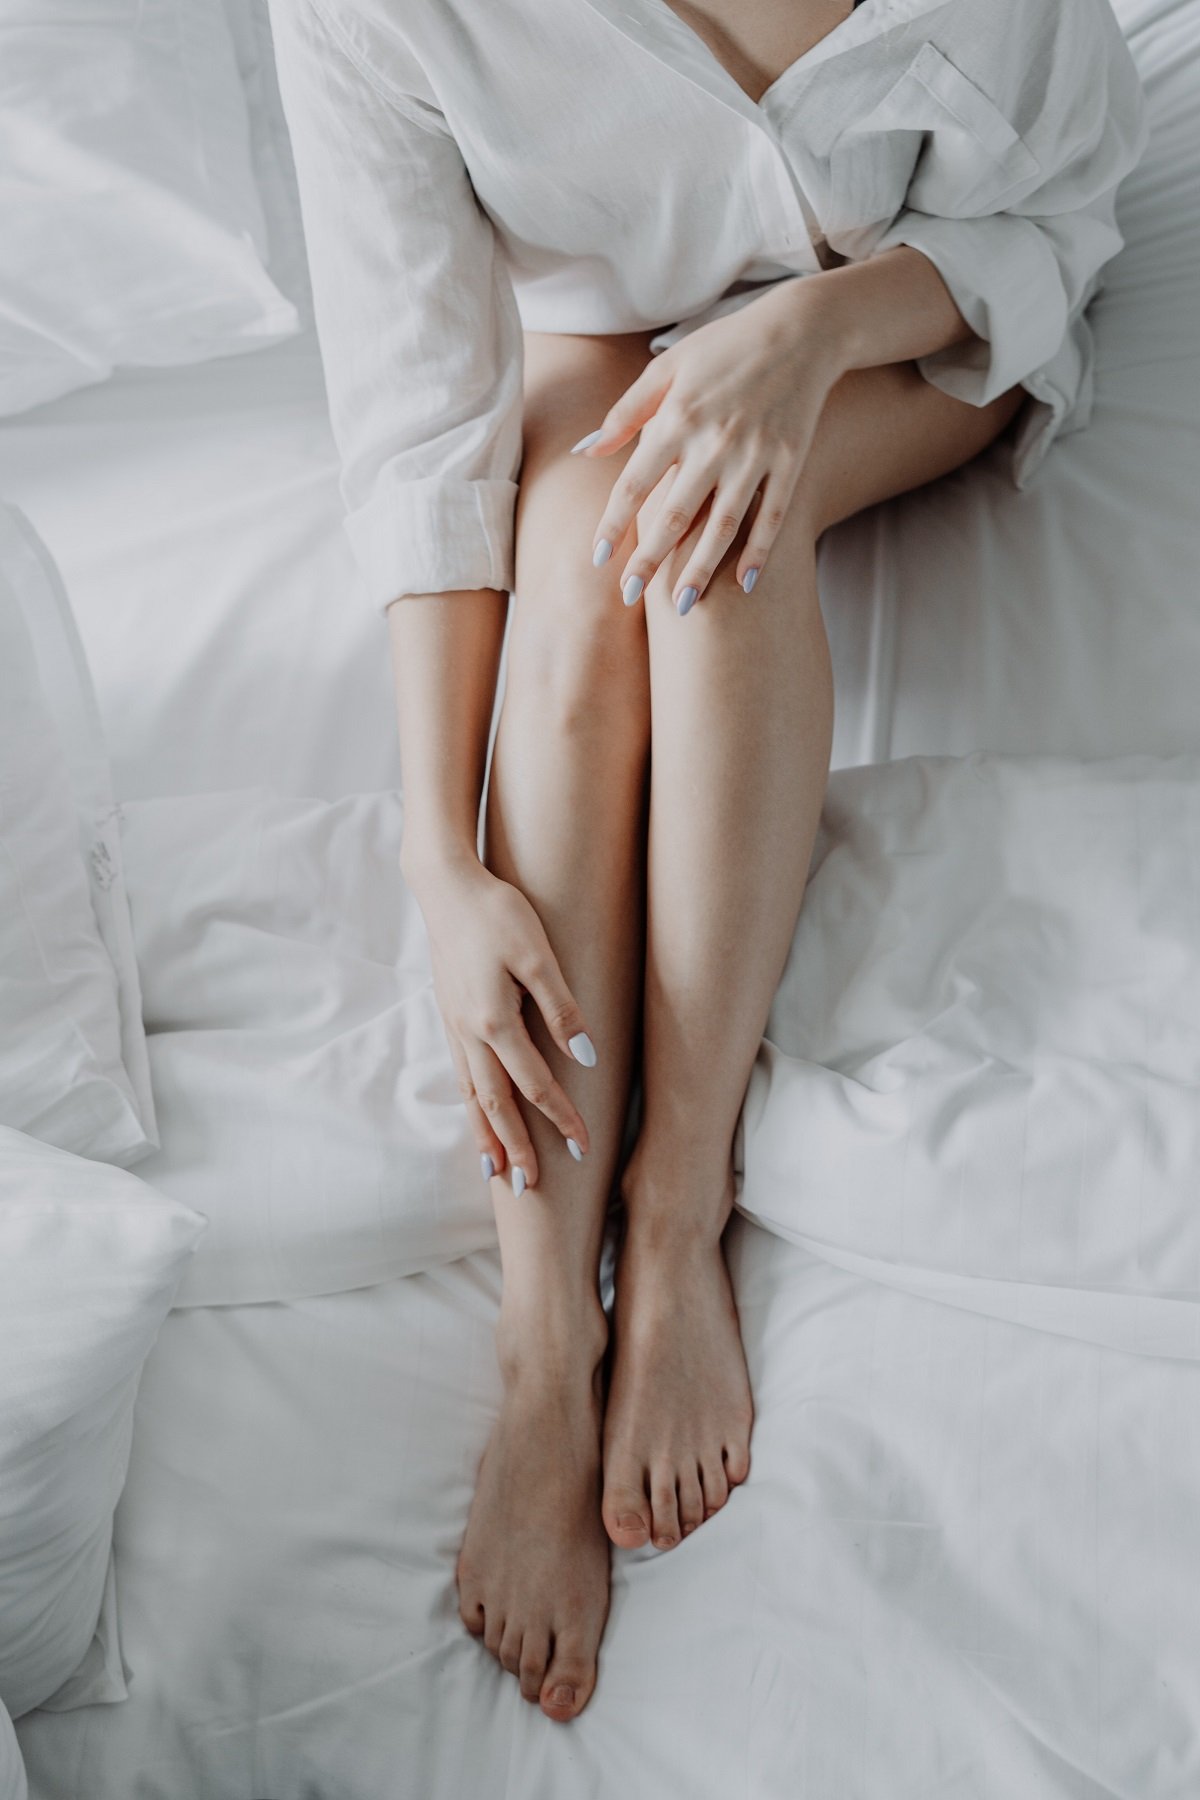 Woman massaging her sore leg muscles